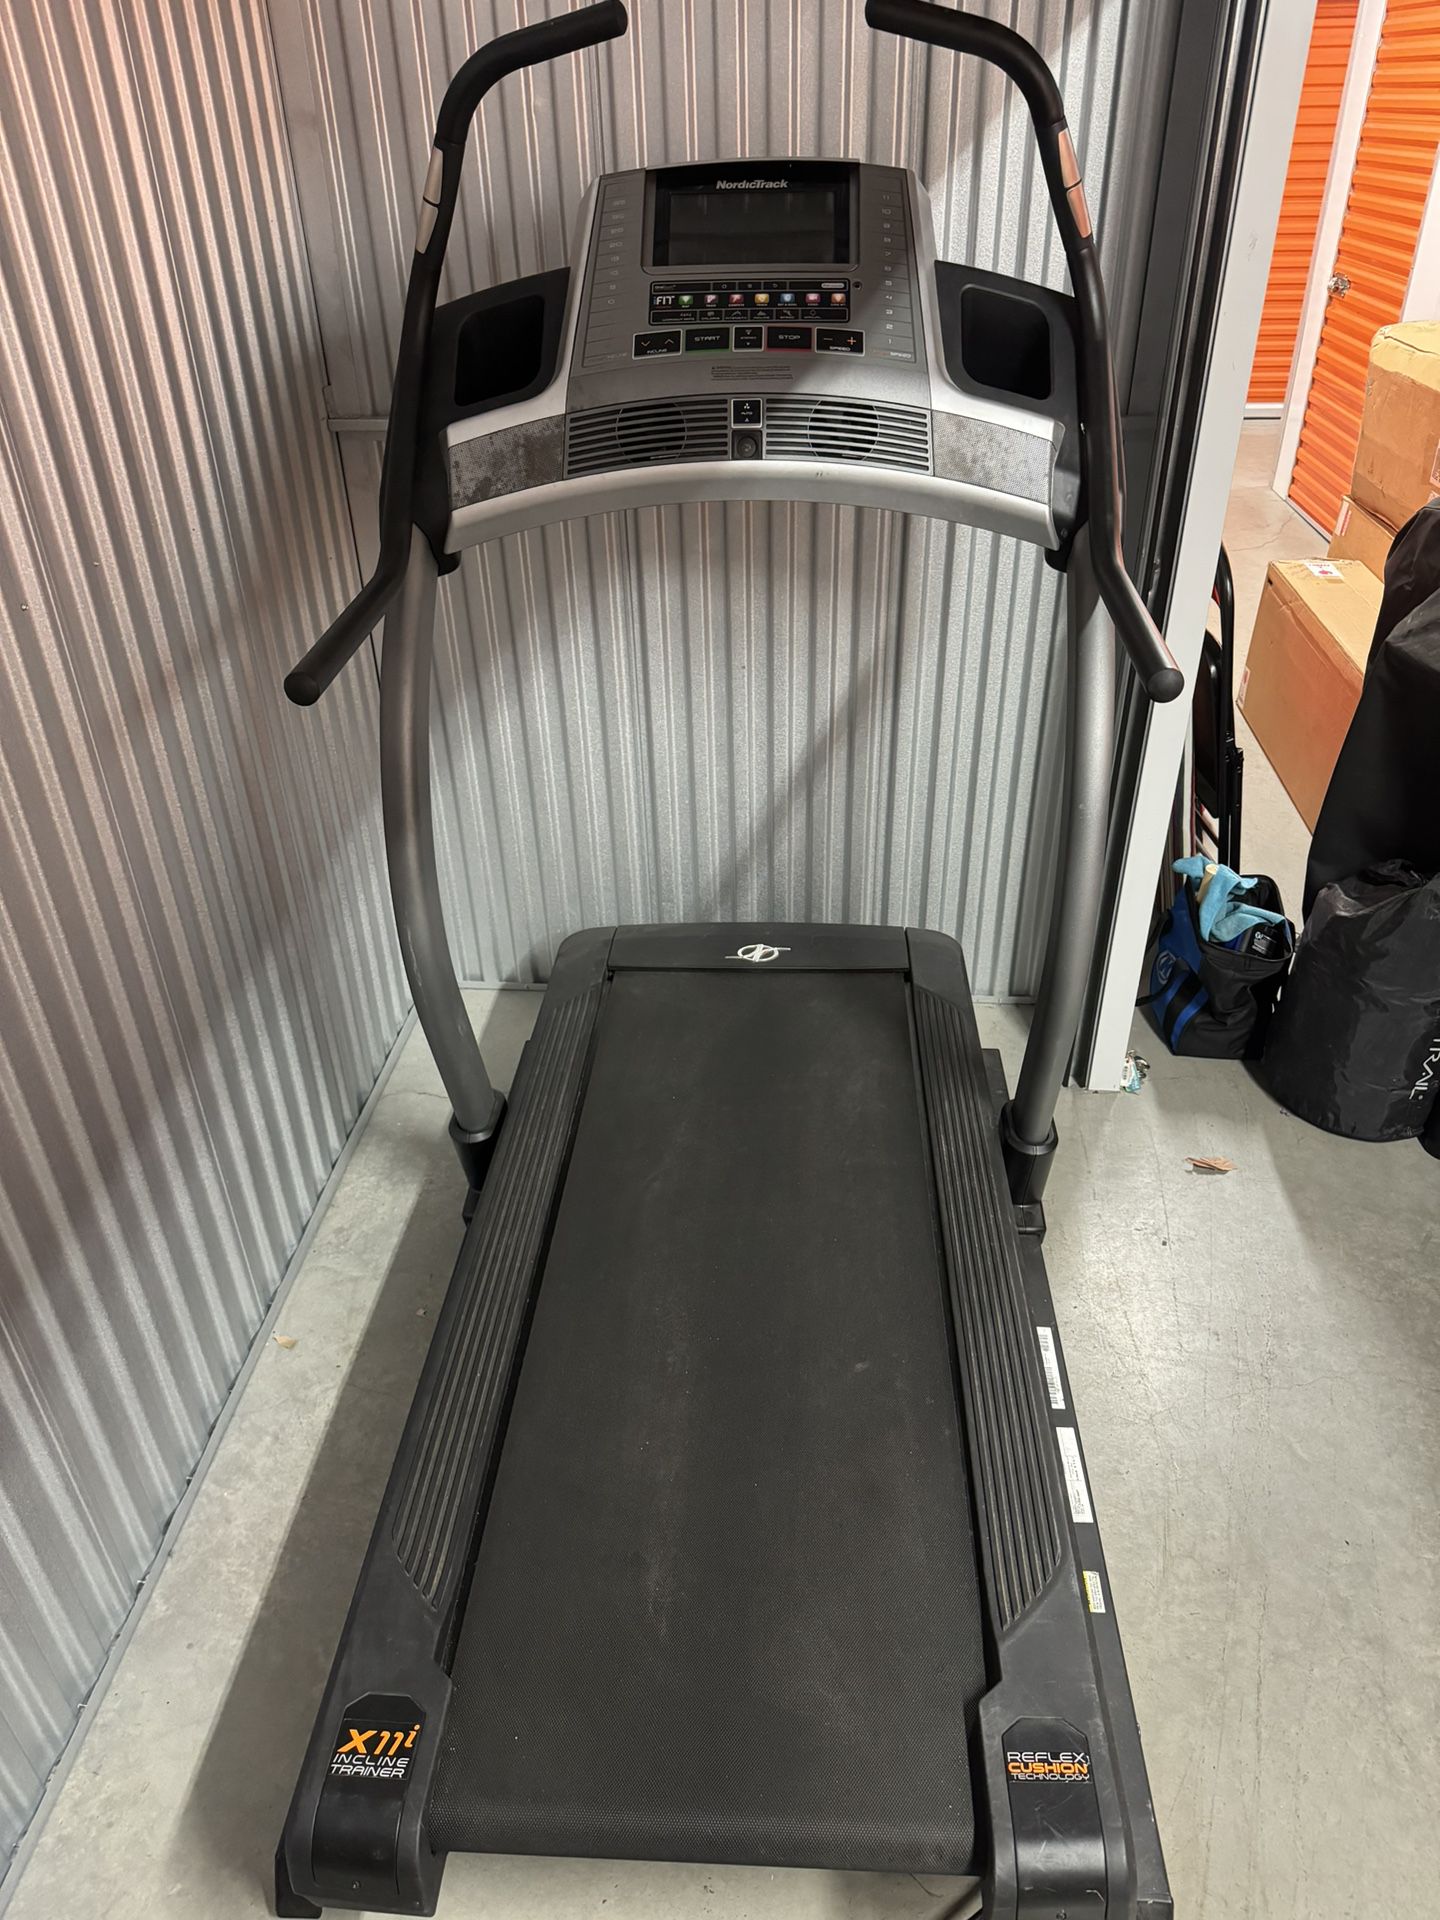 NordicTrack x11i Incline Treadmill